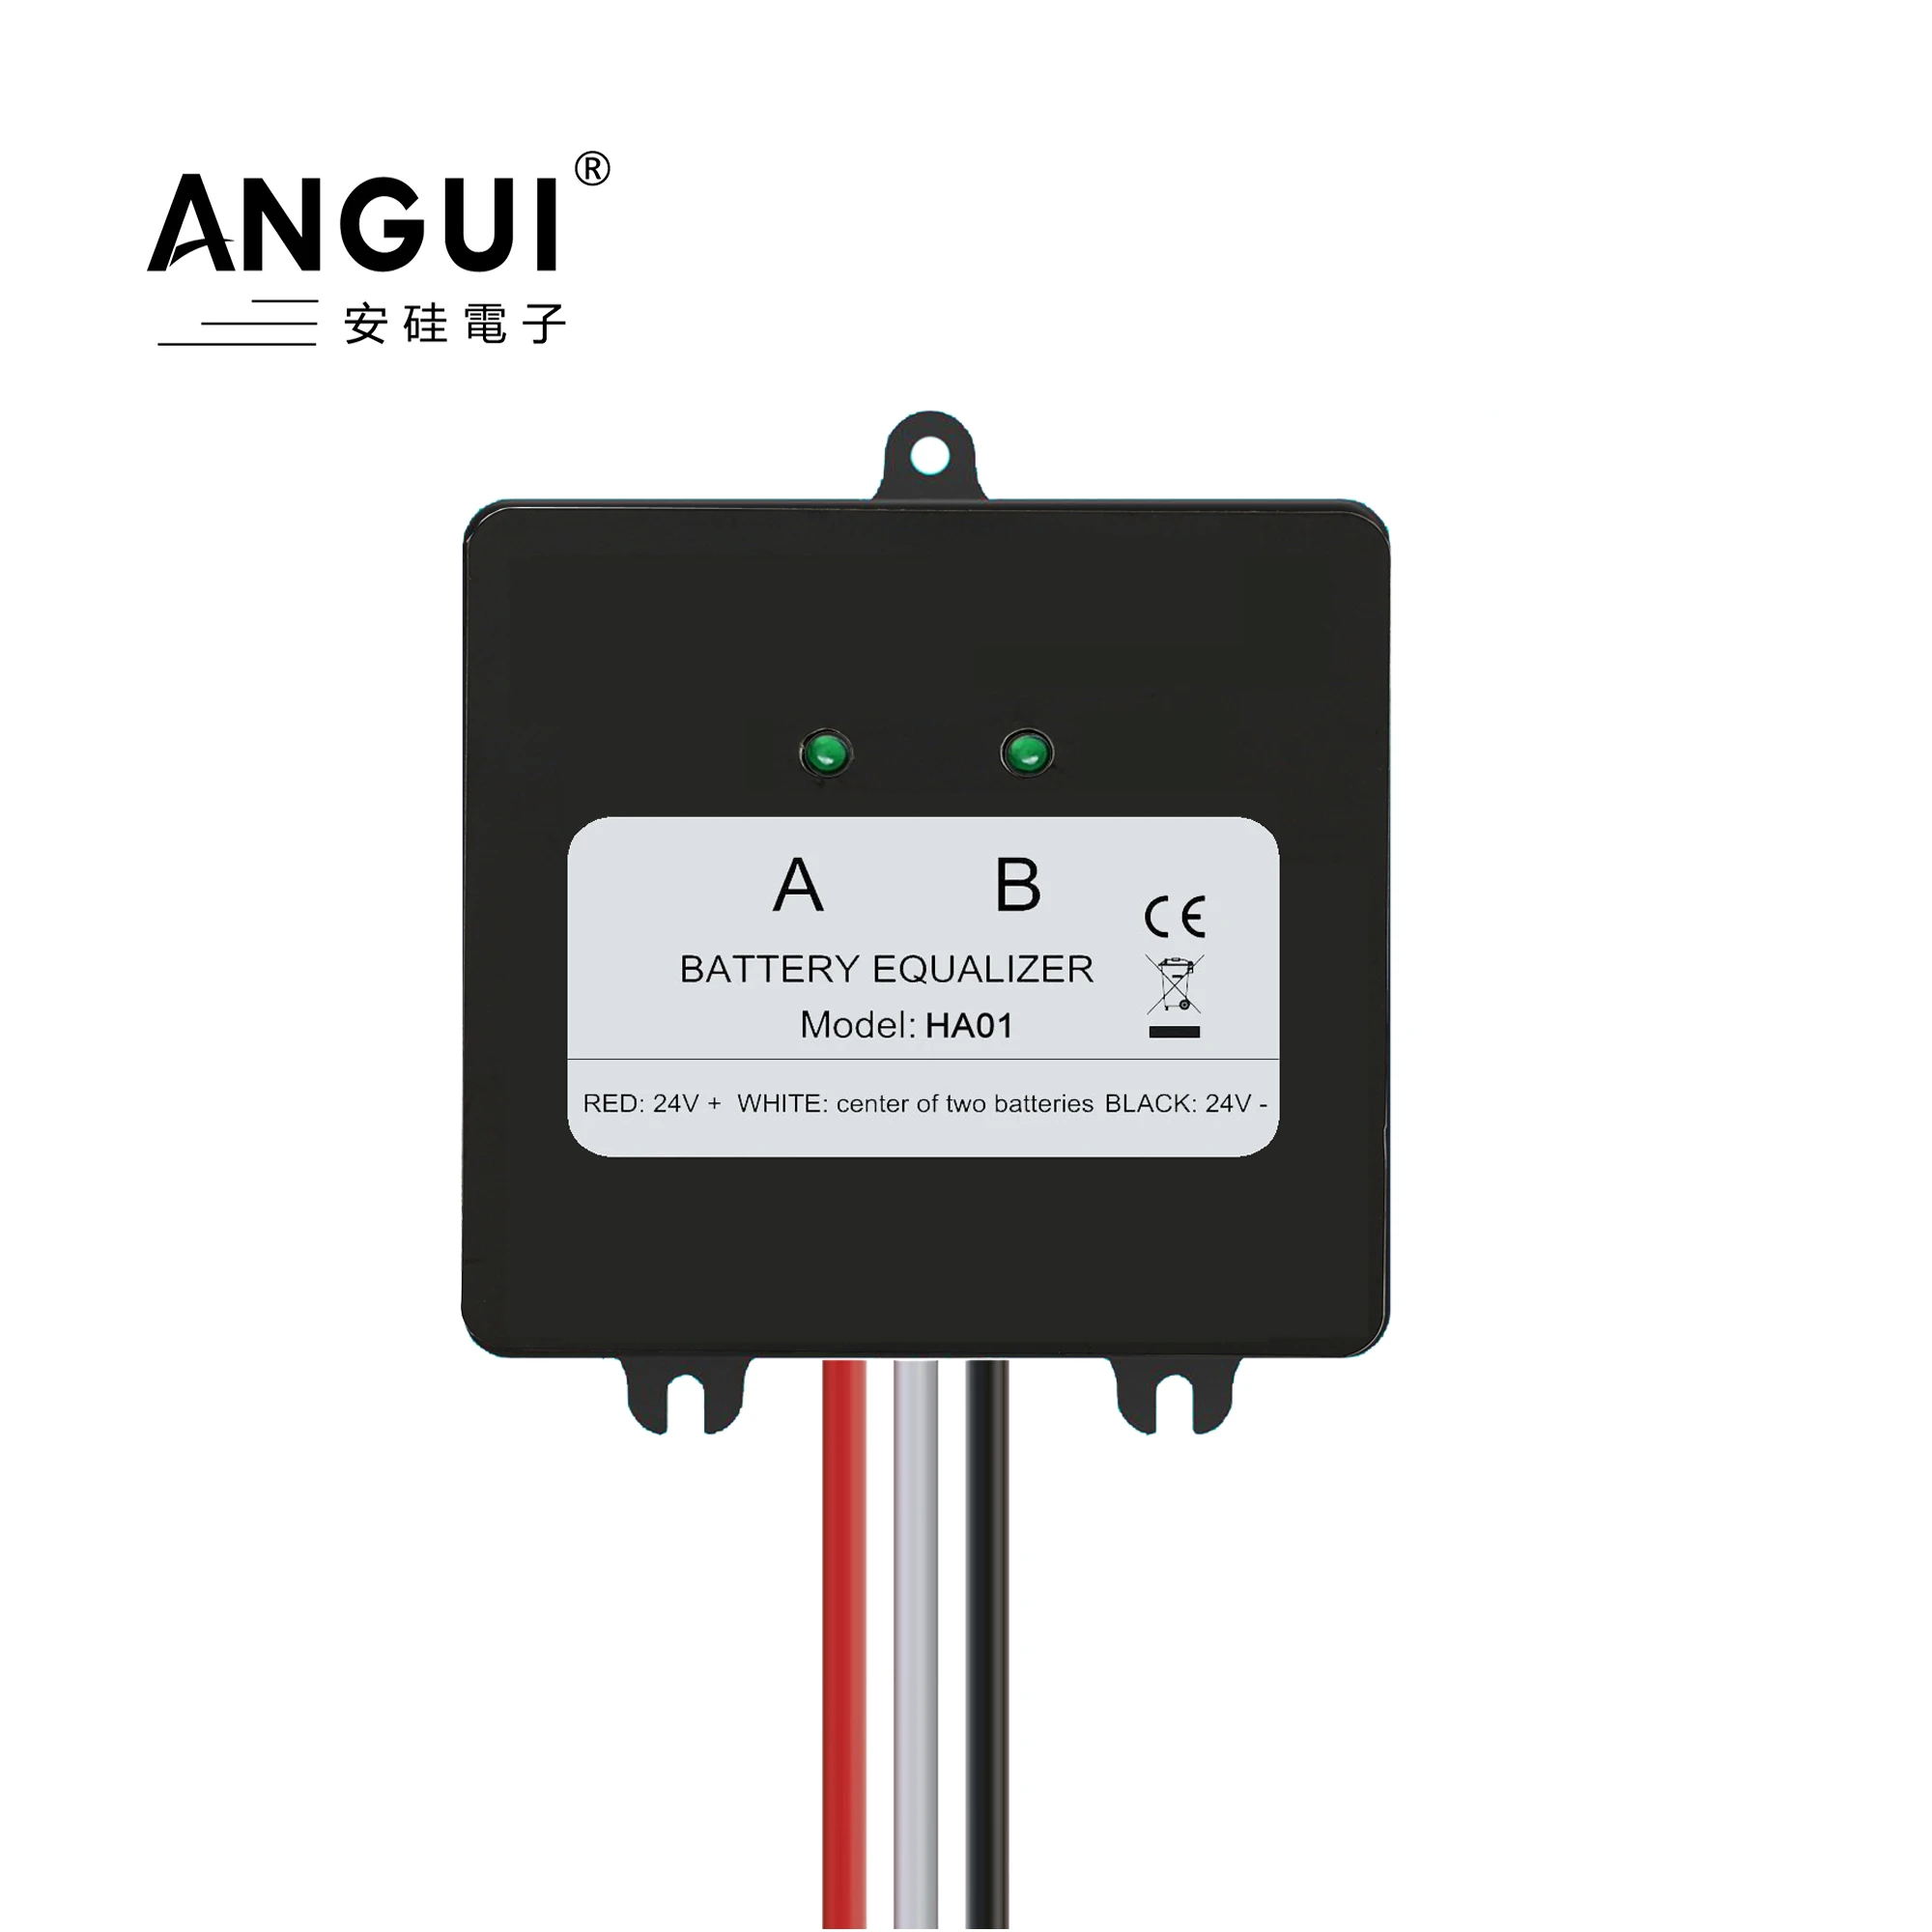 ANGUI Battery Equalizer HA01 24V Batteries Voltage 2 x 12V balancer Lead Acid Battery Charger Regulators Connected Series